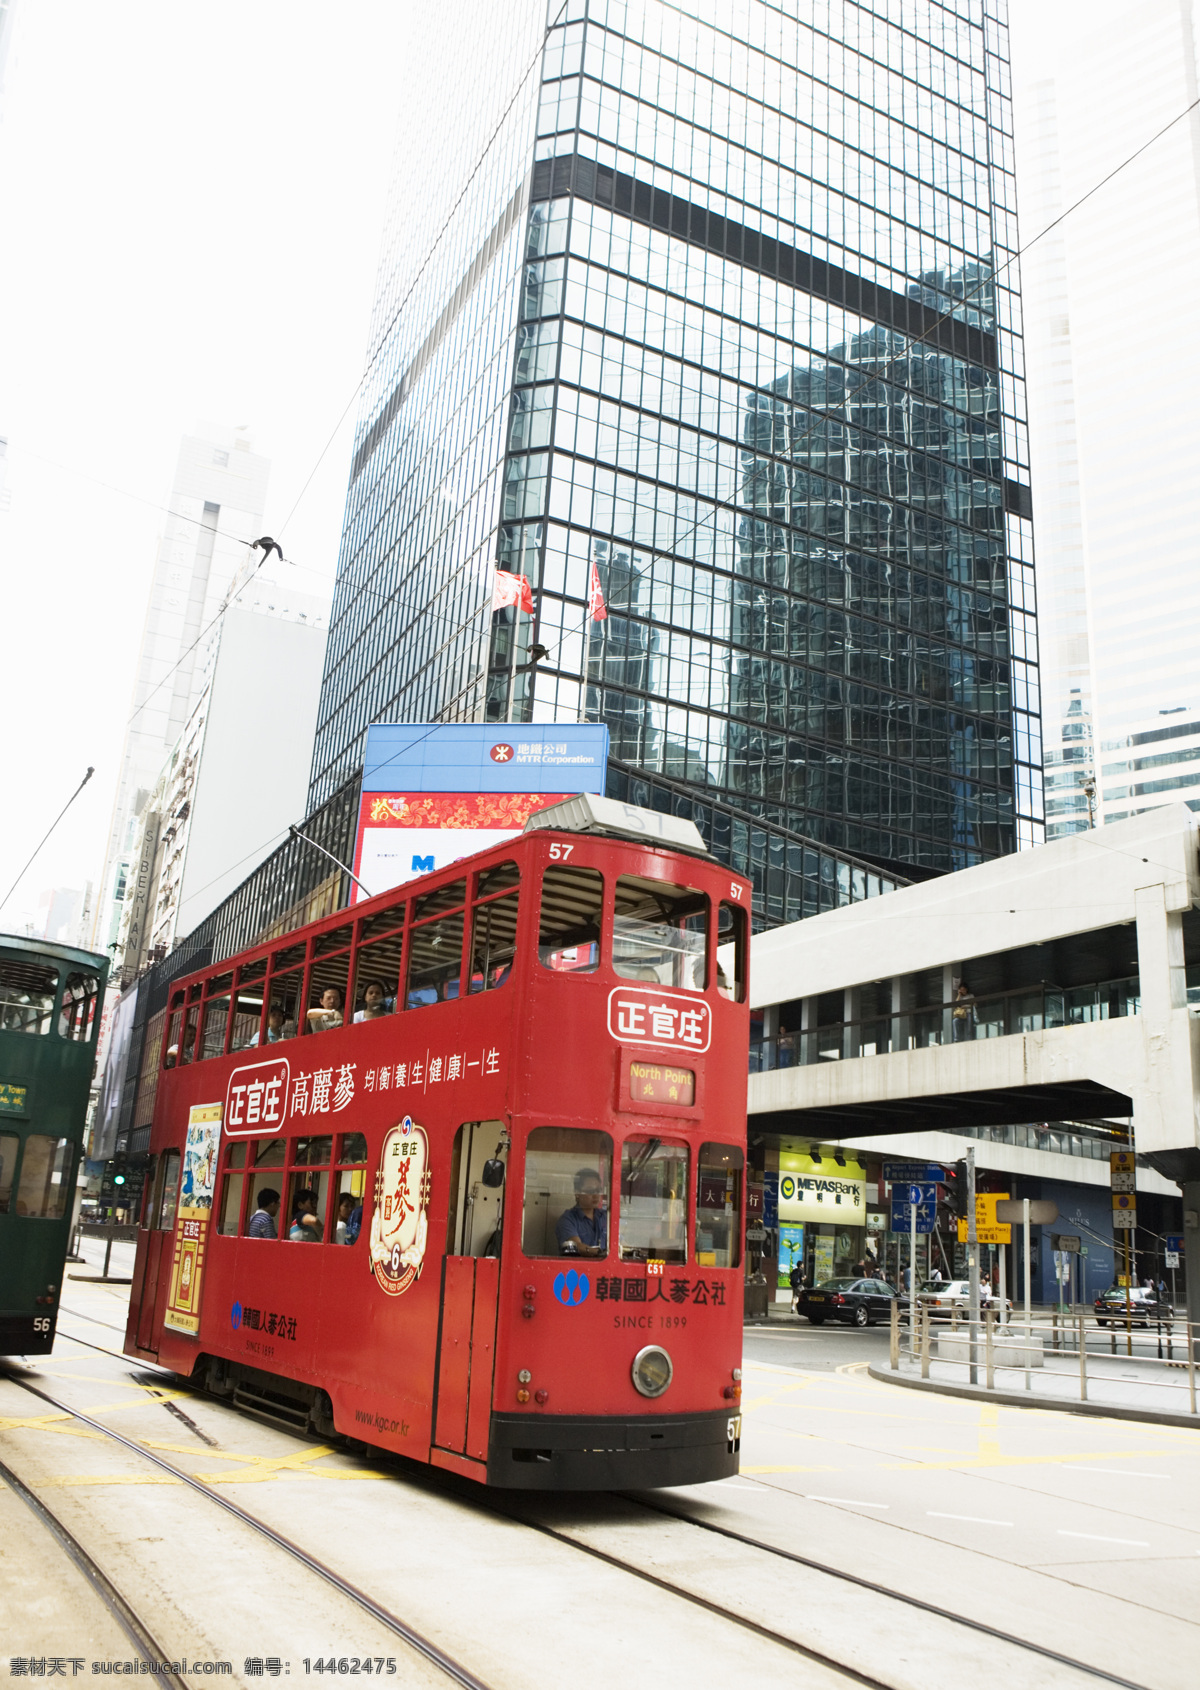 香港 人文 景色 双层 巴士 双层大巴 香港街景 有轨电车 城市街景 旅游摄影 国内旅游